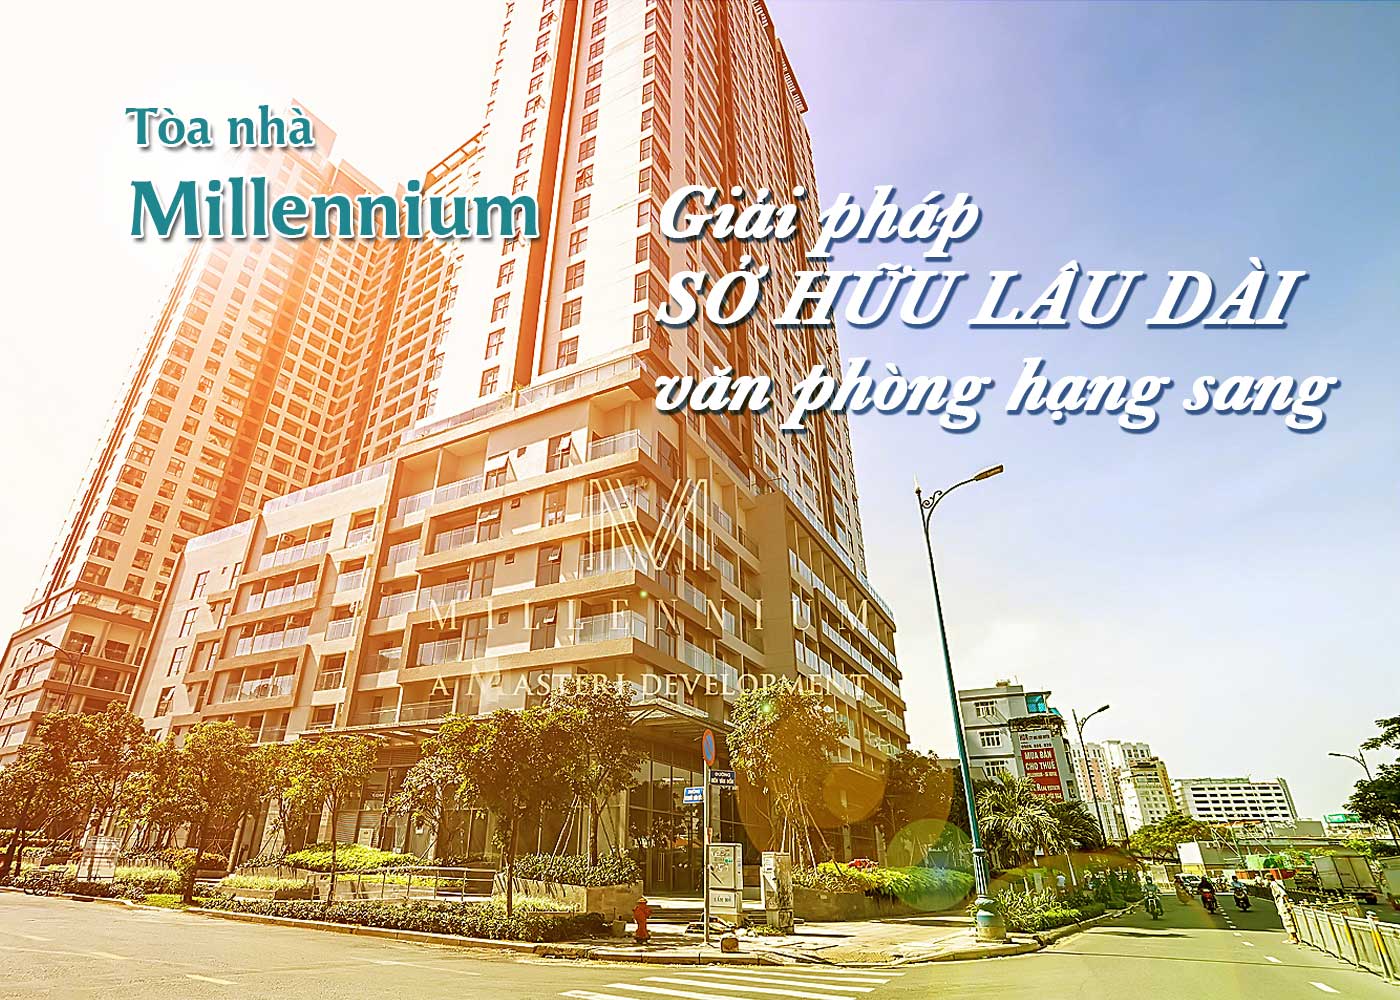 Tòa nhà Millennium giải pháp sở hữu lâu dài văn phòng hạng sang - Ảnh 1